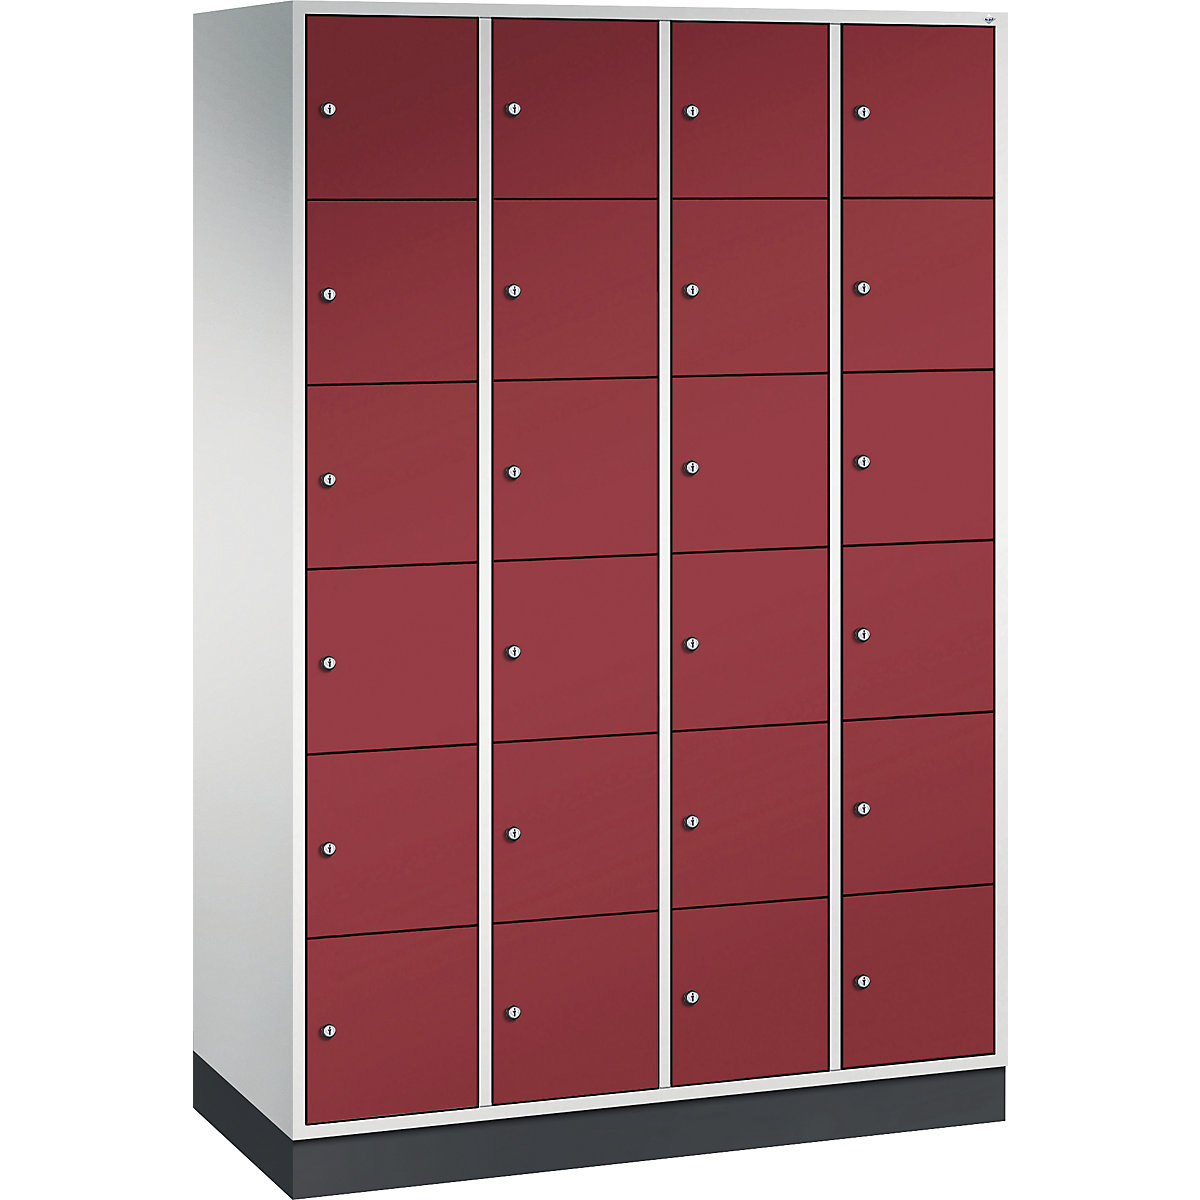 Vestiaire multicases en acier INTRO, casiers hauteur 285 mm – C+P, l x p 1220 x 500 mm, 24 casiers, corps gris clair, portes rouge rubis-15